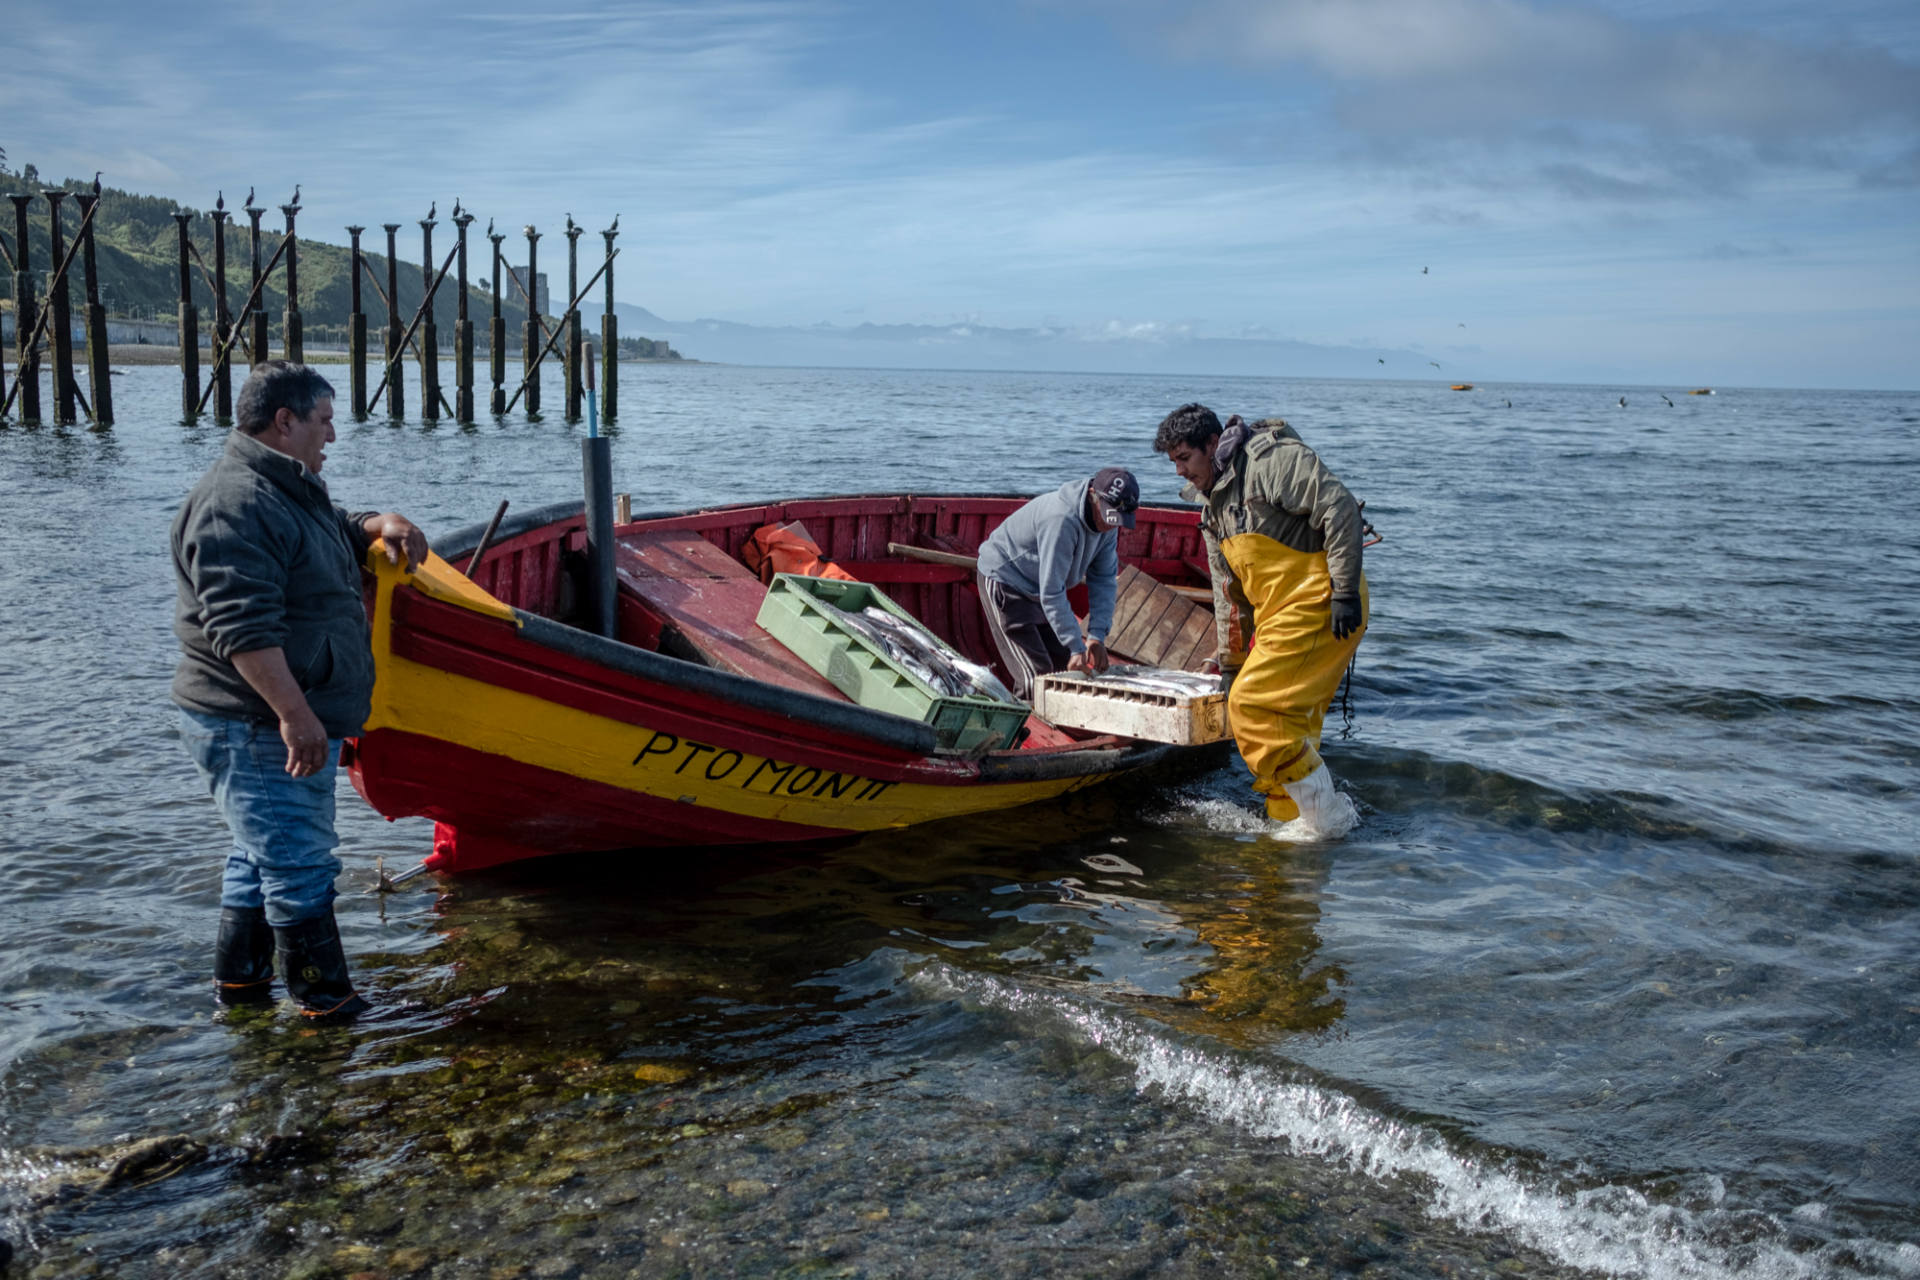 Artisanal fishermen arrive with fresh fish for sale in Puerto Montt on February 27, 2023. (Photo: Cristobal Venegas)